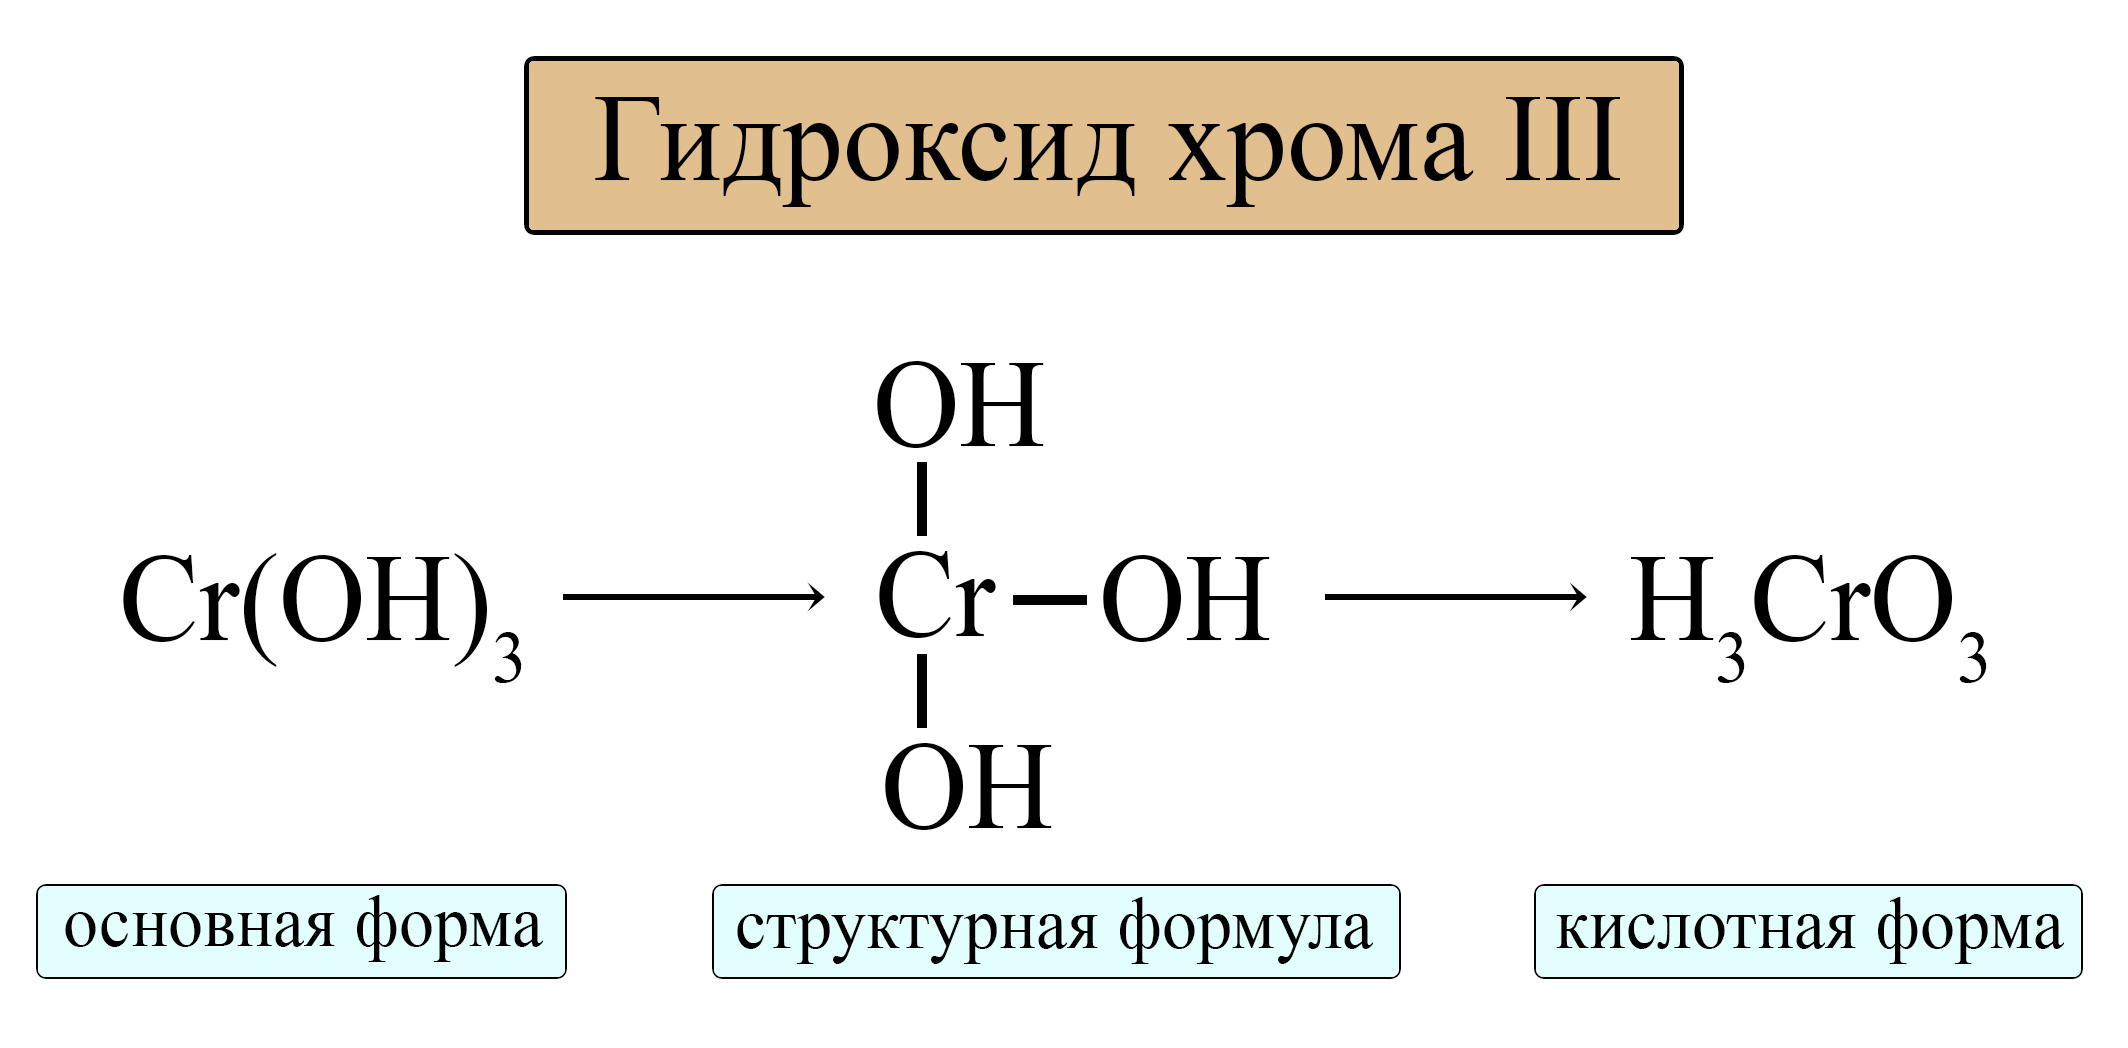 Амфотерные гидроксиды в кислотной и основной форме